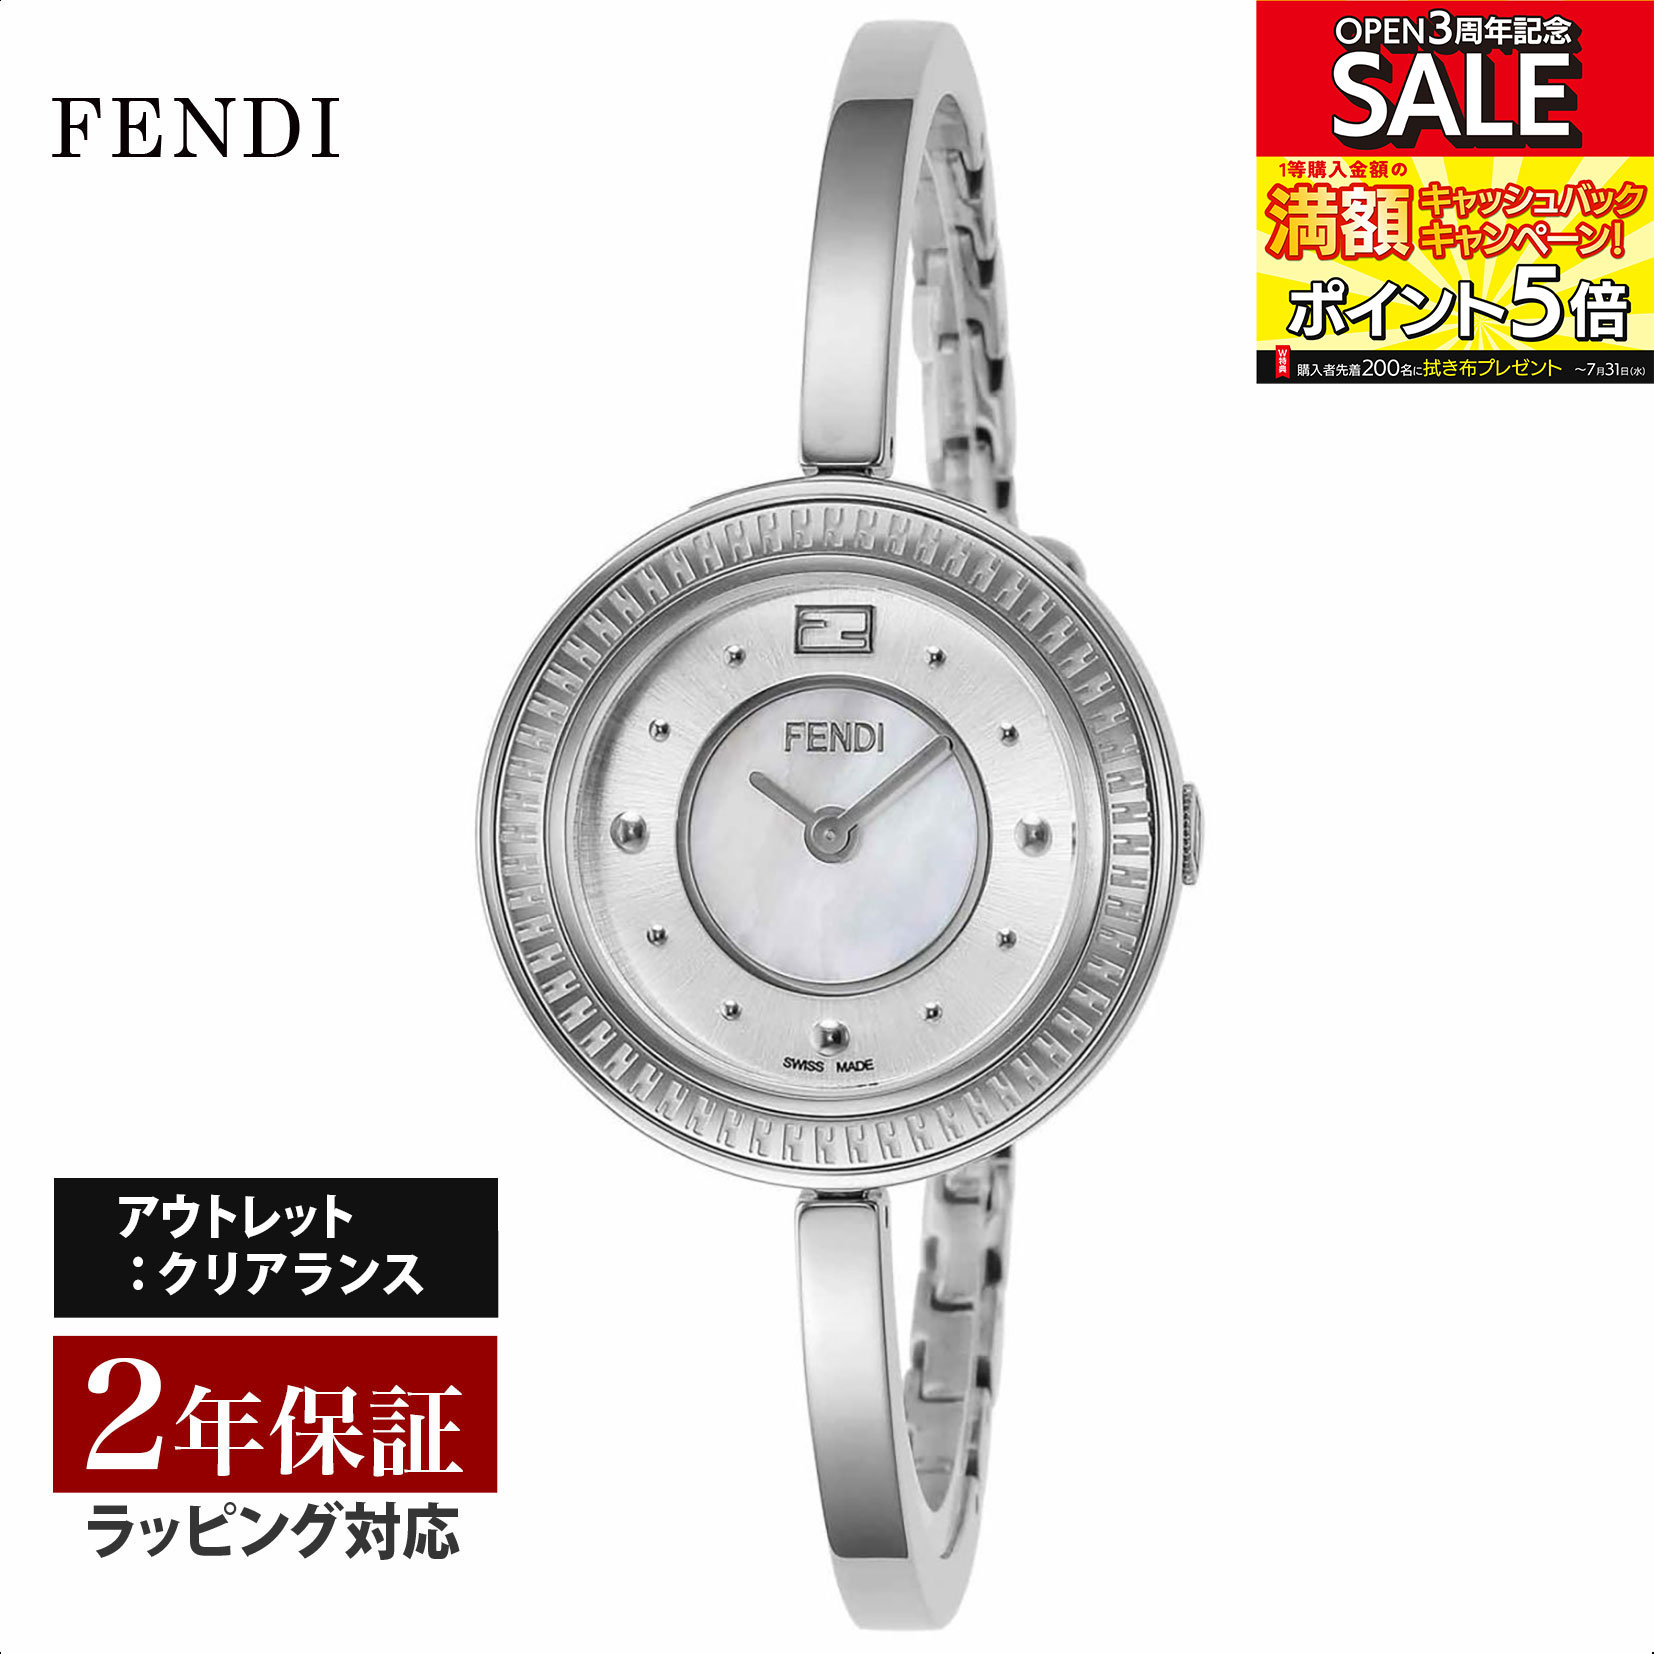 【クリアランスSALE】 FENDI フェンディ MayWay クォーツ レディース シルバー F378024500 腕時計 高級腕時計 ブランド 